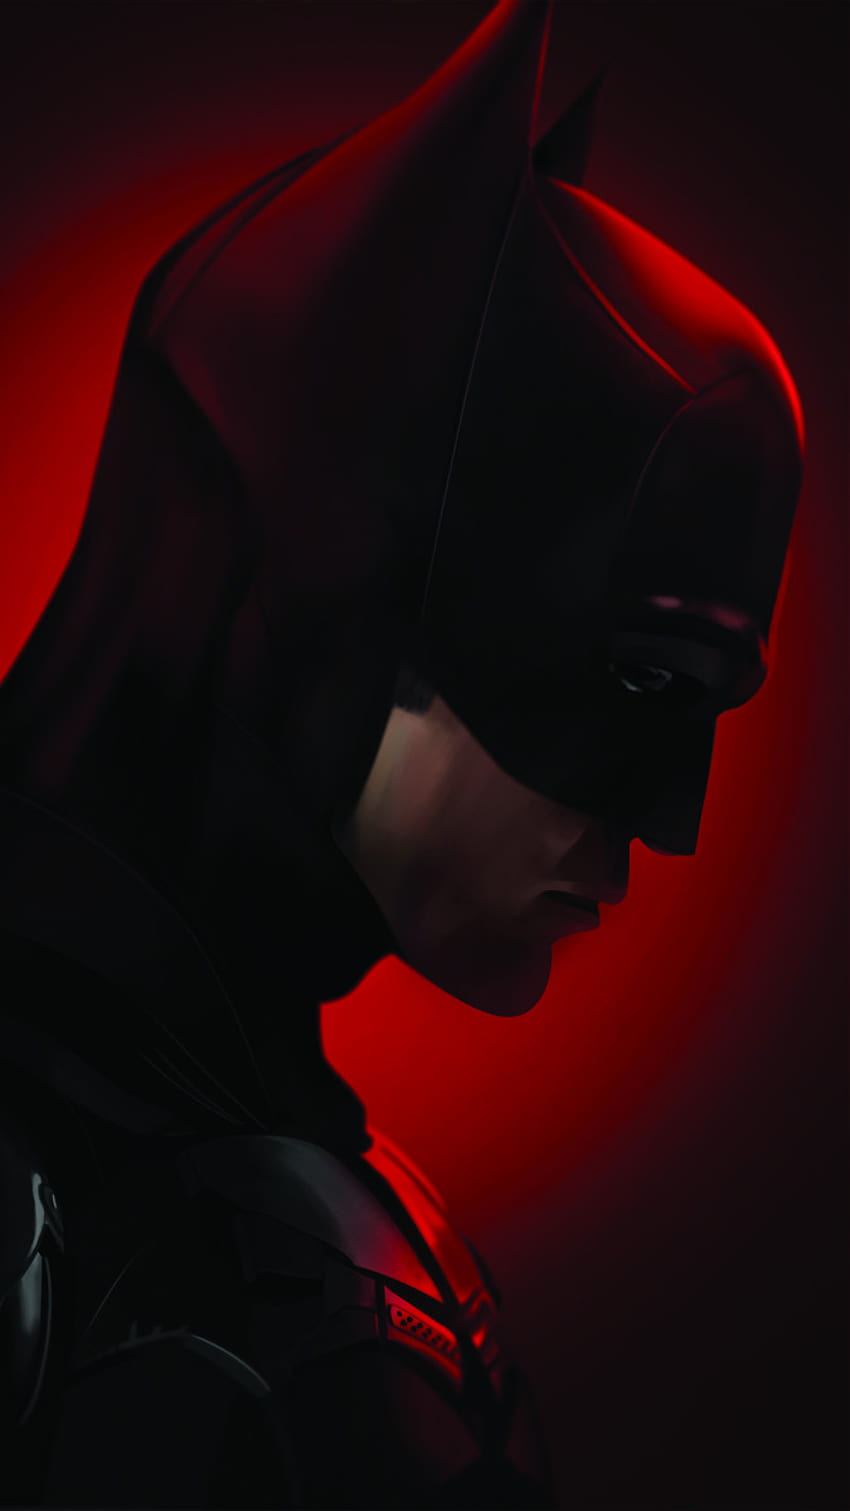 The Matt Reeves Rises como Robert Pattinson Começa com sua tomada como The Darker Knight, o batman 2022 robert pattinson Papel de parede de celular HD